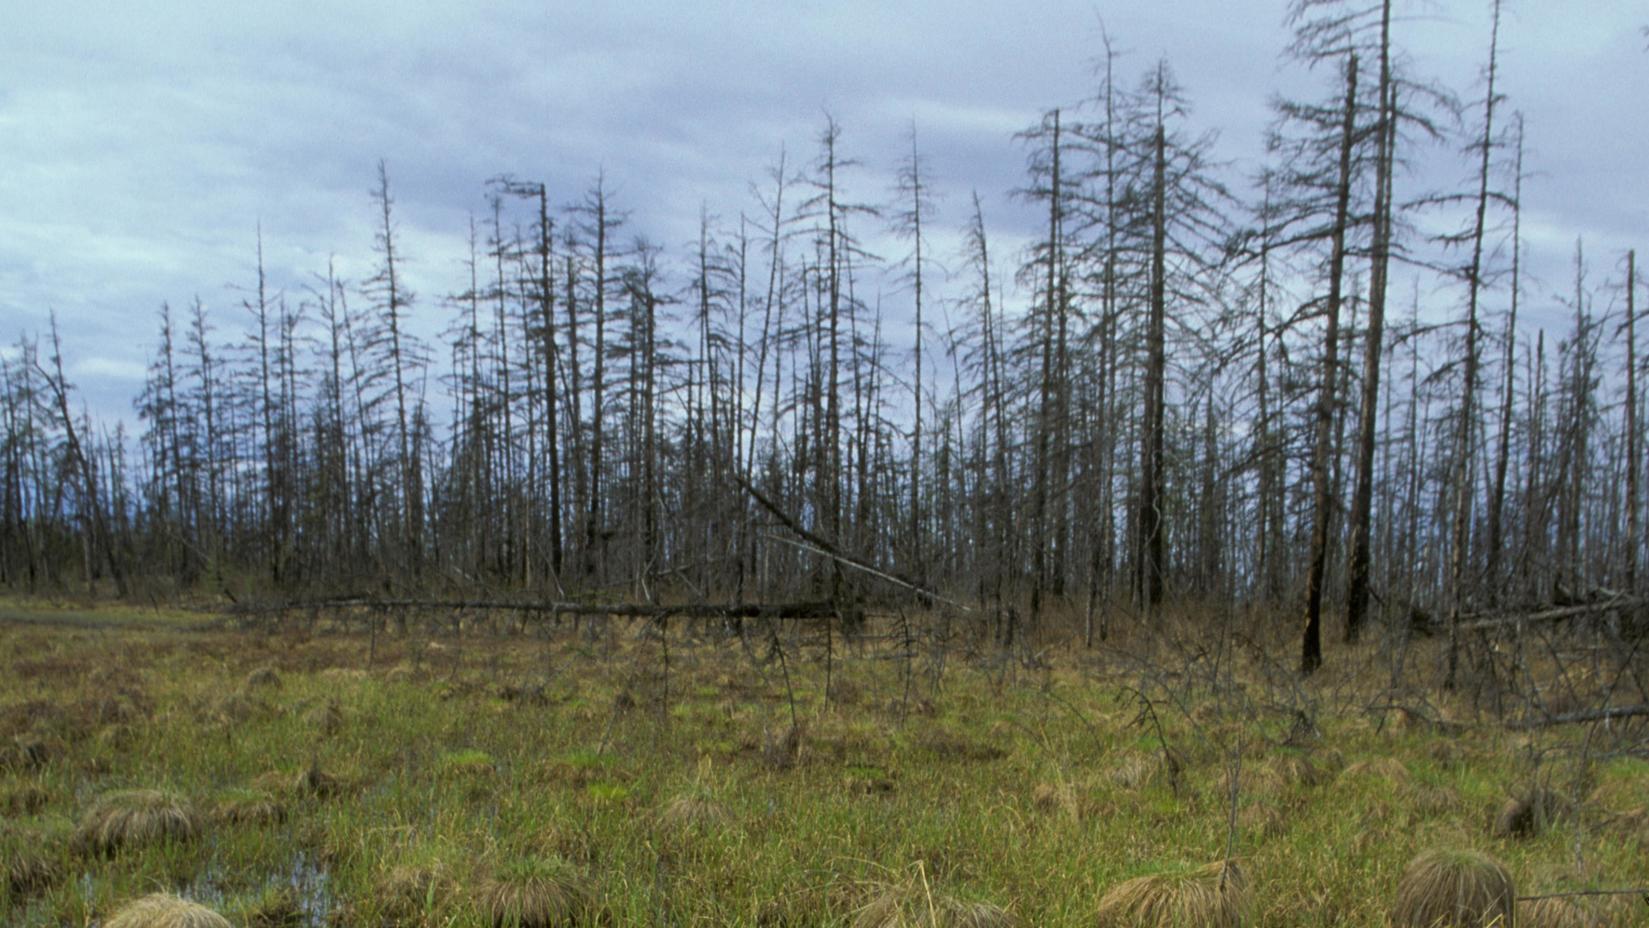 Grasbüschel und Bäume in der sibirischen Tundra, Taiga, Russland, Europa | Verwendung weltweit, Keine Weitergabe an Wiederverkäufer.